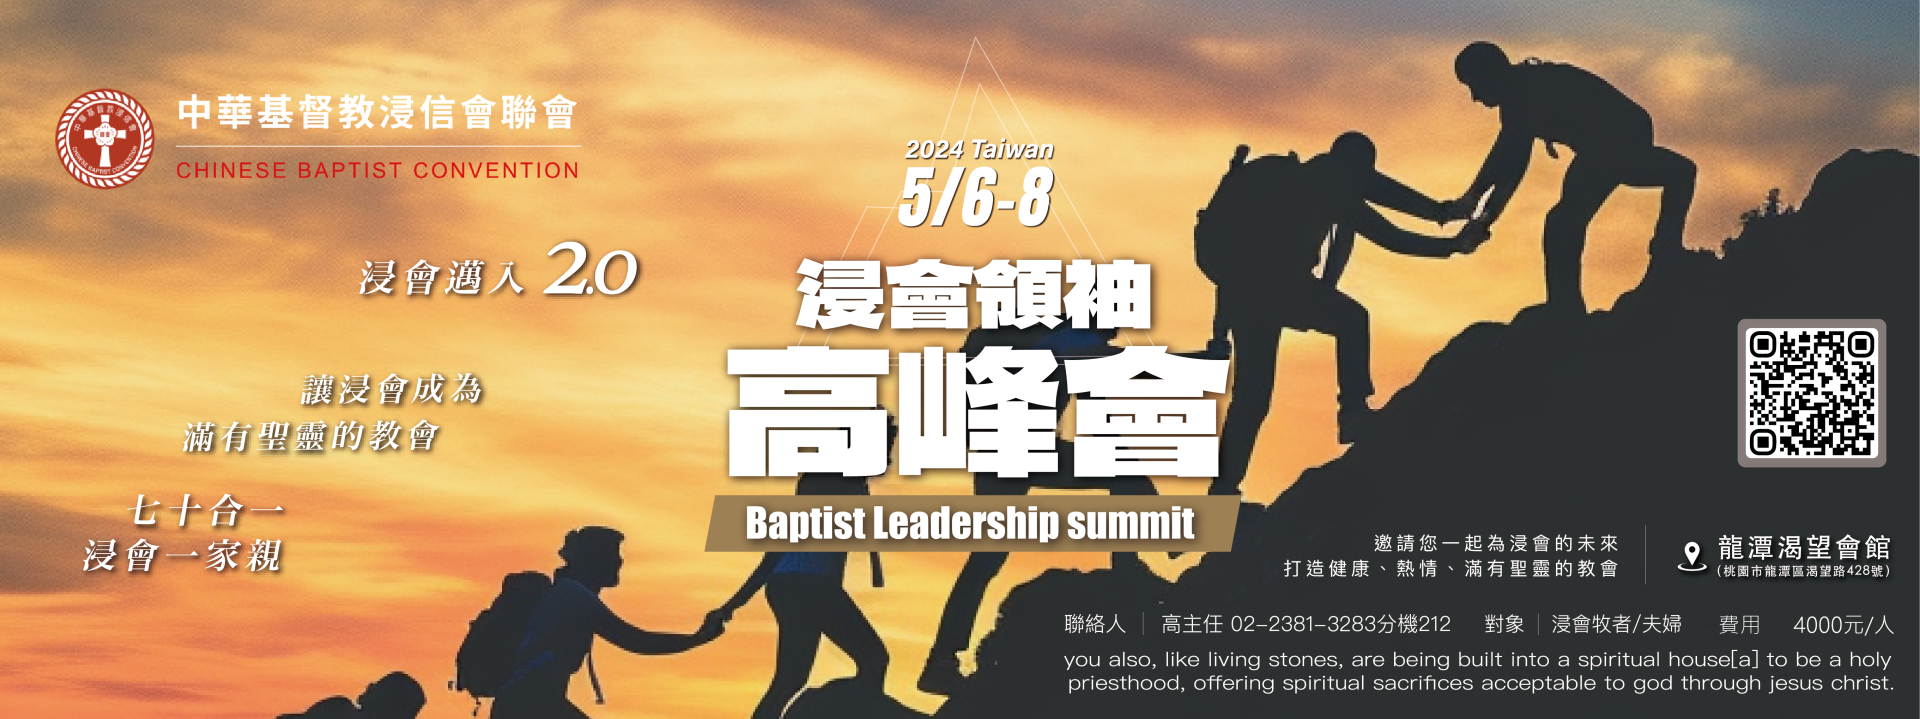 2024  TAIWAN 浸會領袖高峰會